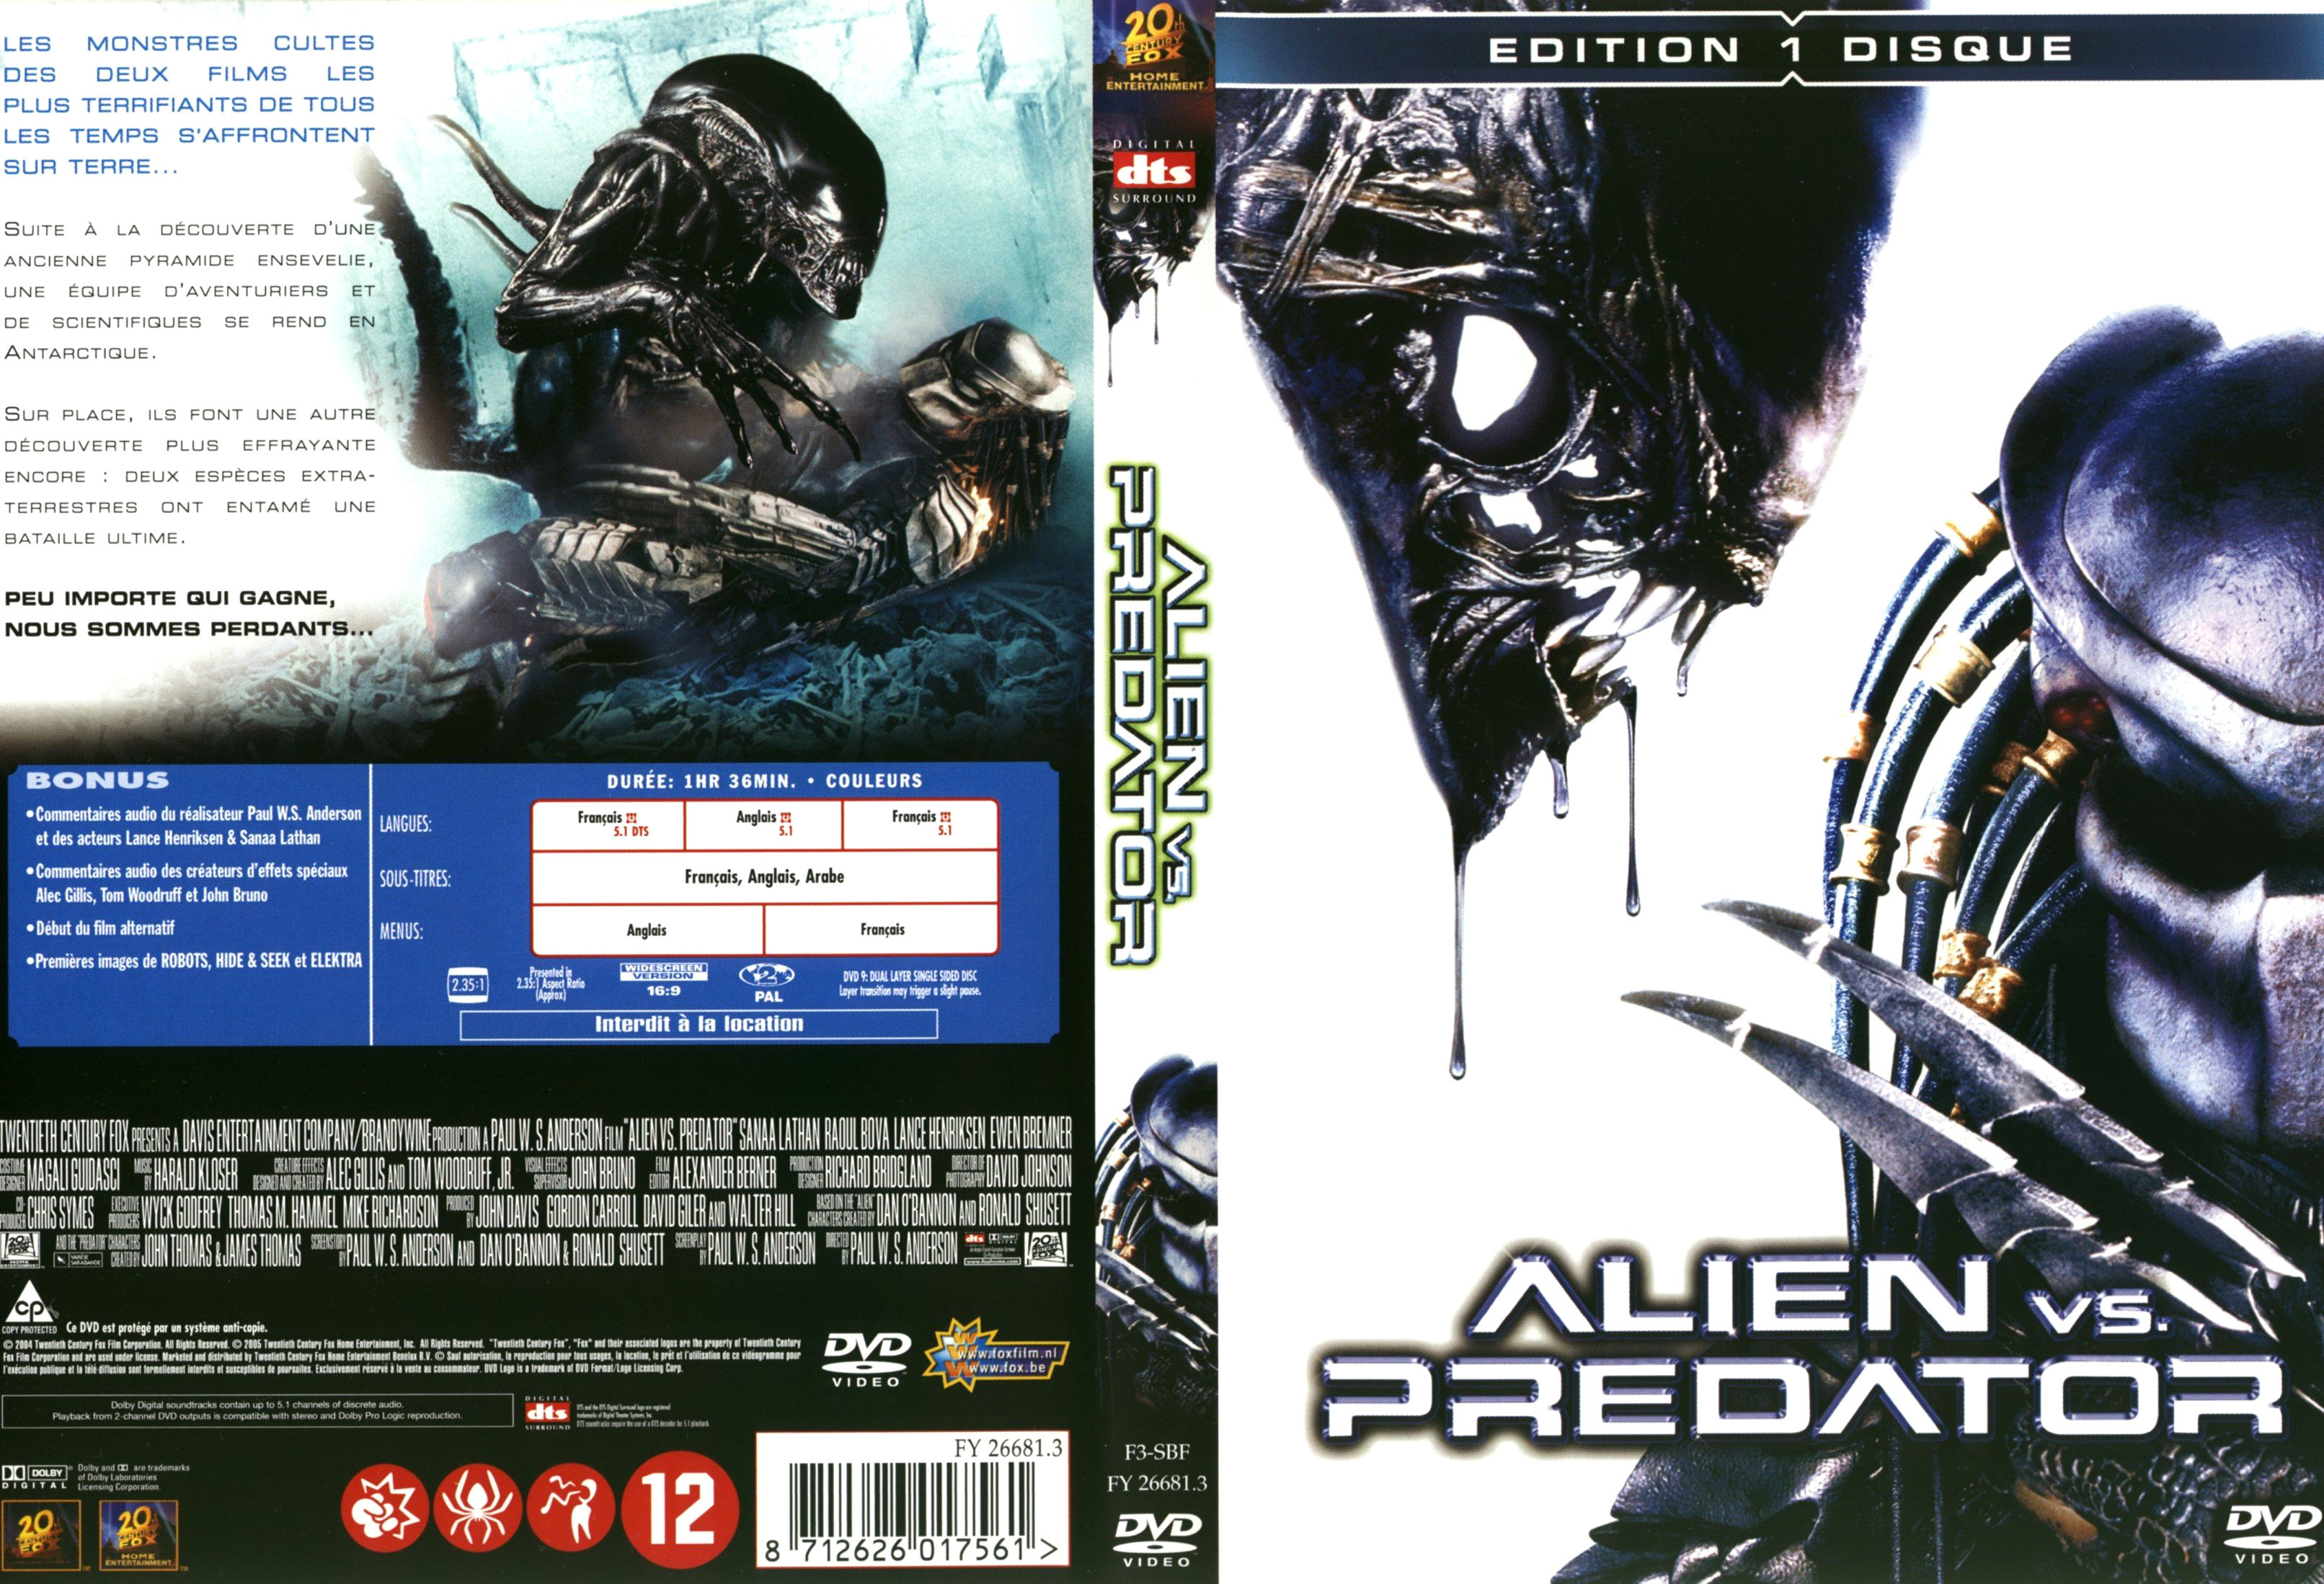 Jaquette DVD Alien vs Predator v4